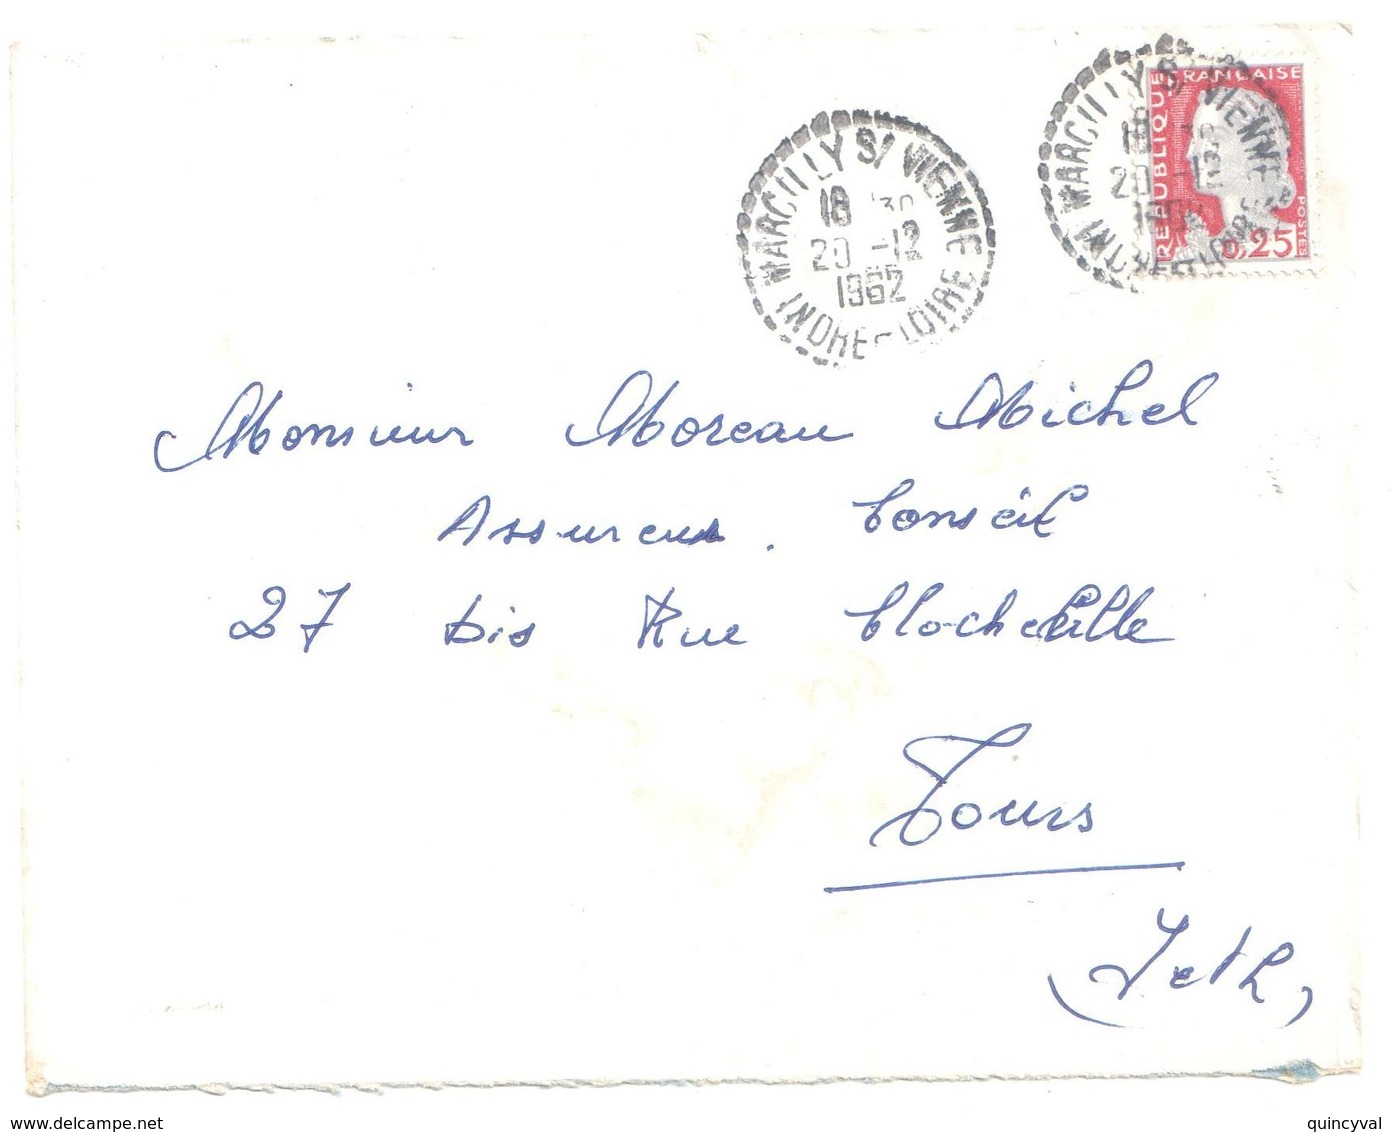 MARCILLY S/ VIENNE Indre Et Loire Lettre 25c Decaris Yv 1263  Ob 20 12 1962 FB04 Recette Distribution Lautier B8 - Storia Postale